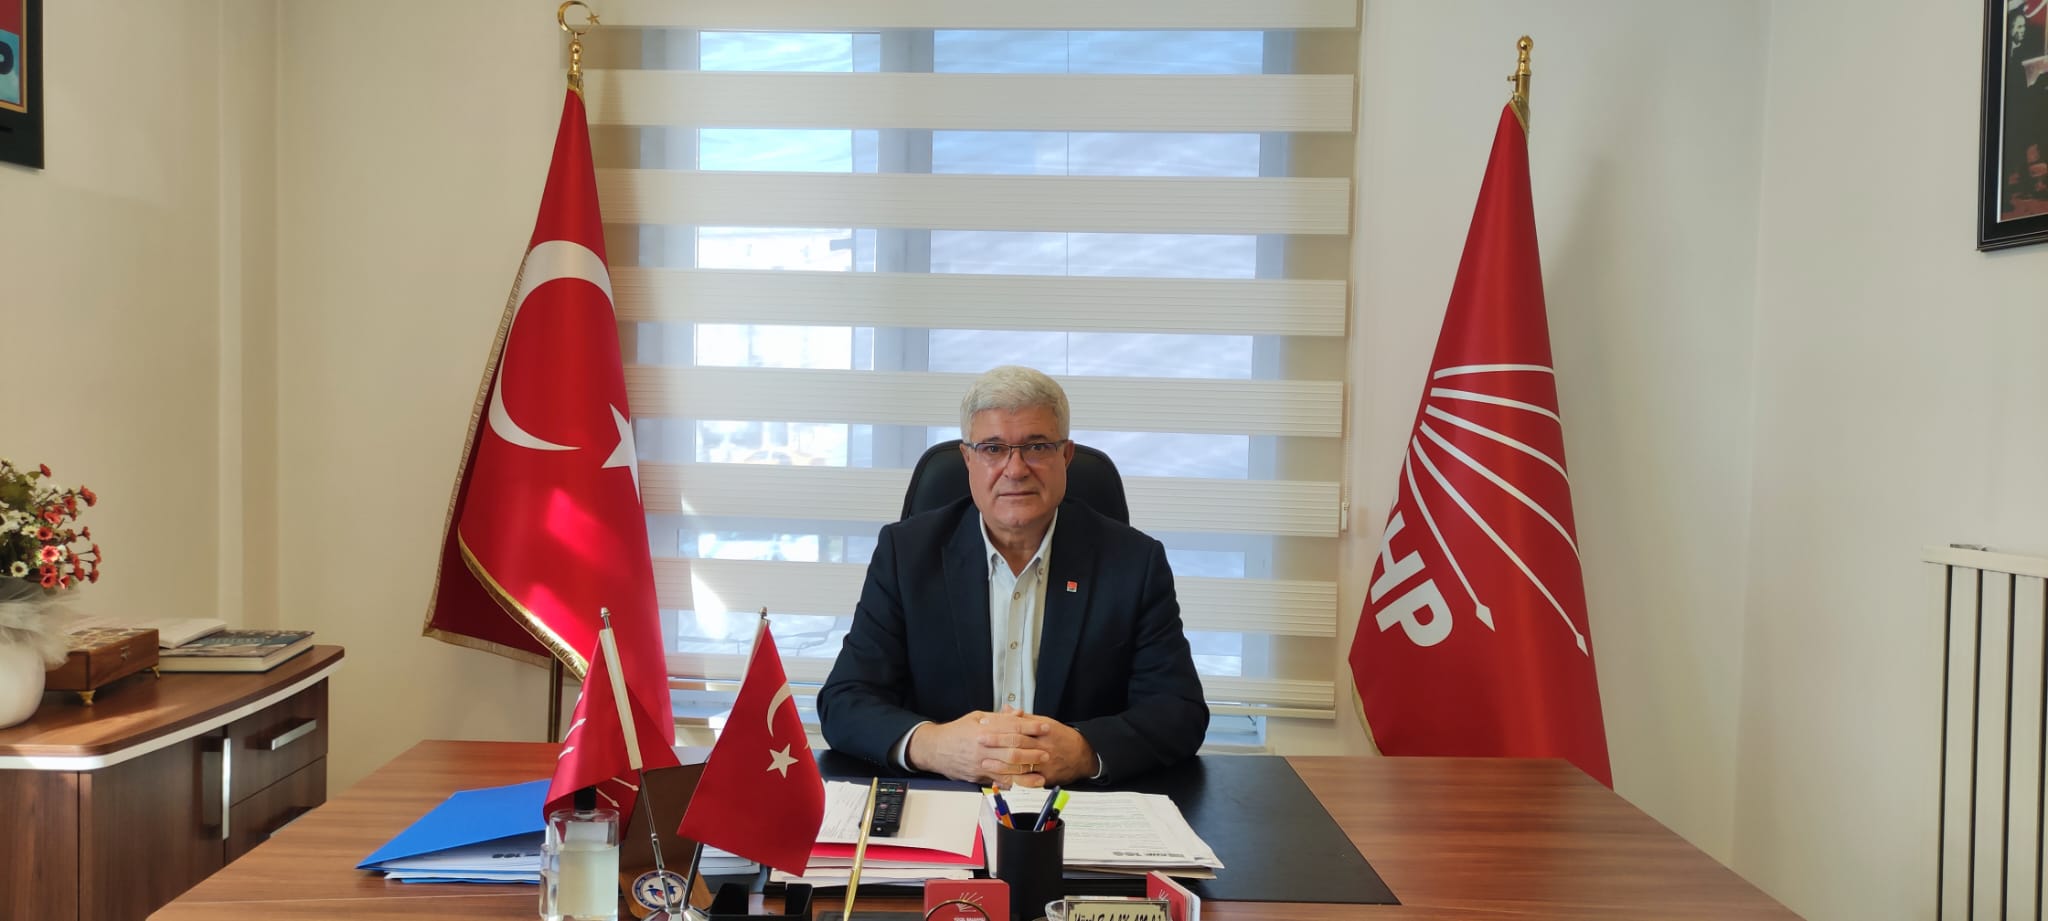 Balkanlı: “AKP milletvekilleri lüks yaşamda sınır tanımıyor”